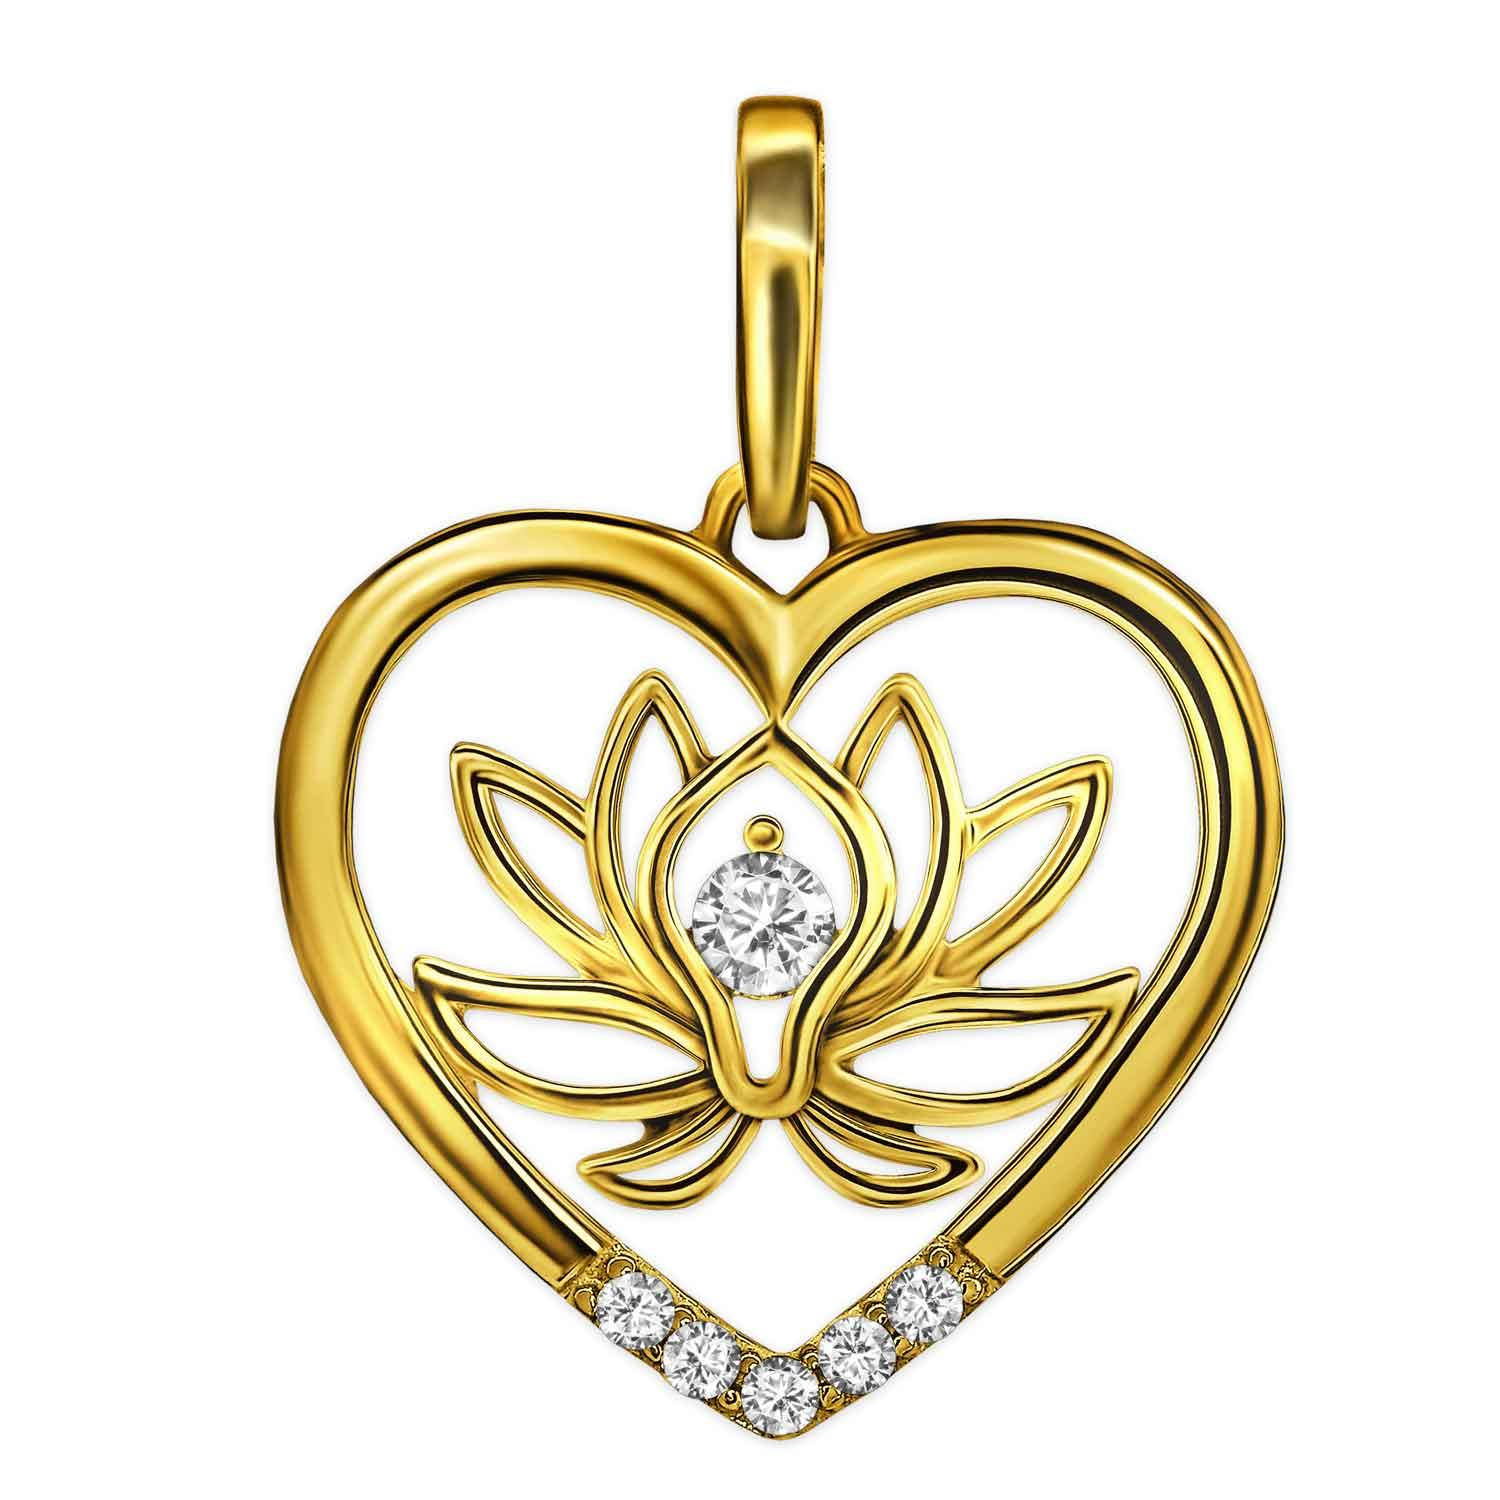 Goldener Anhänger Lotusblume im Herz teils offen mit vielen Zirkonia glänzend 333 Gold 8 Karat